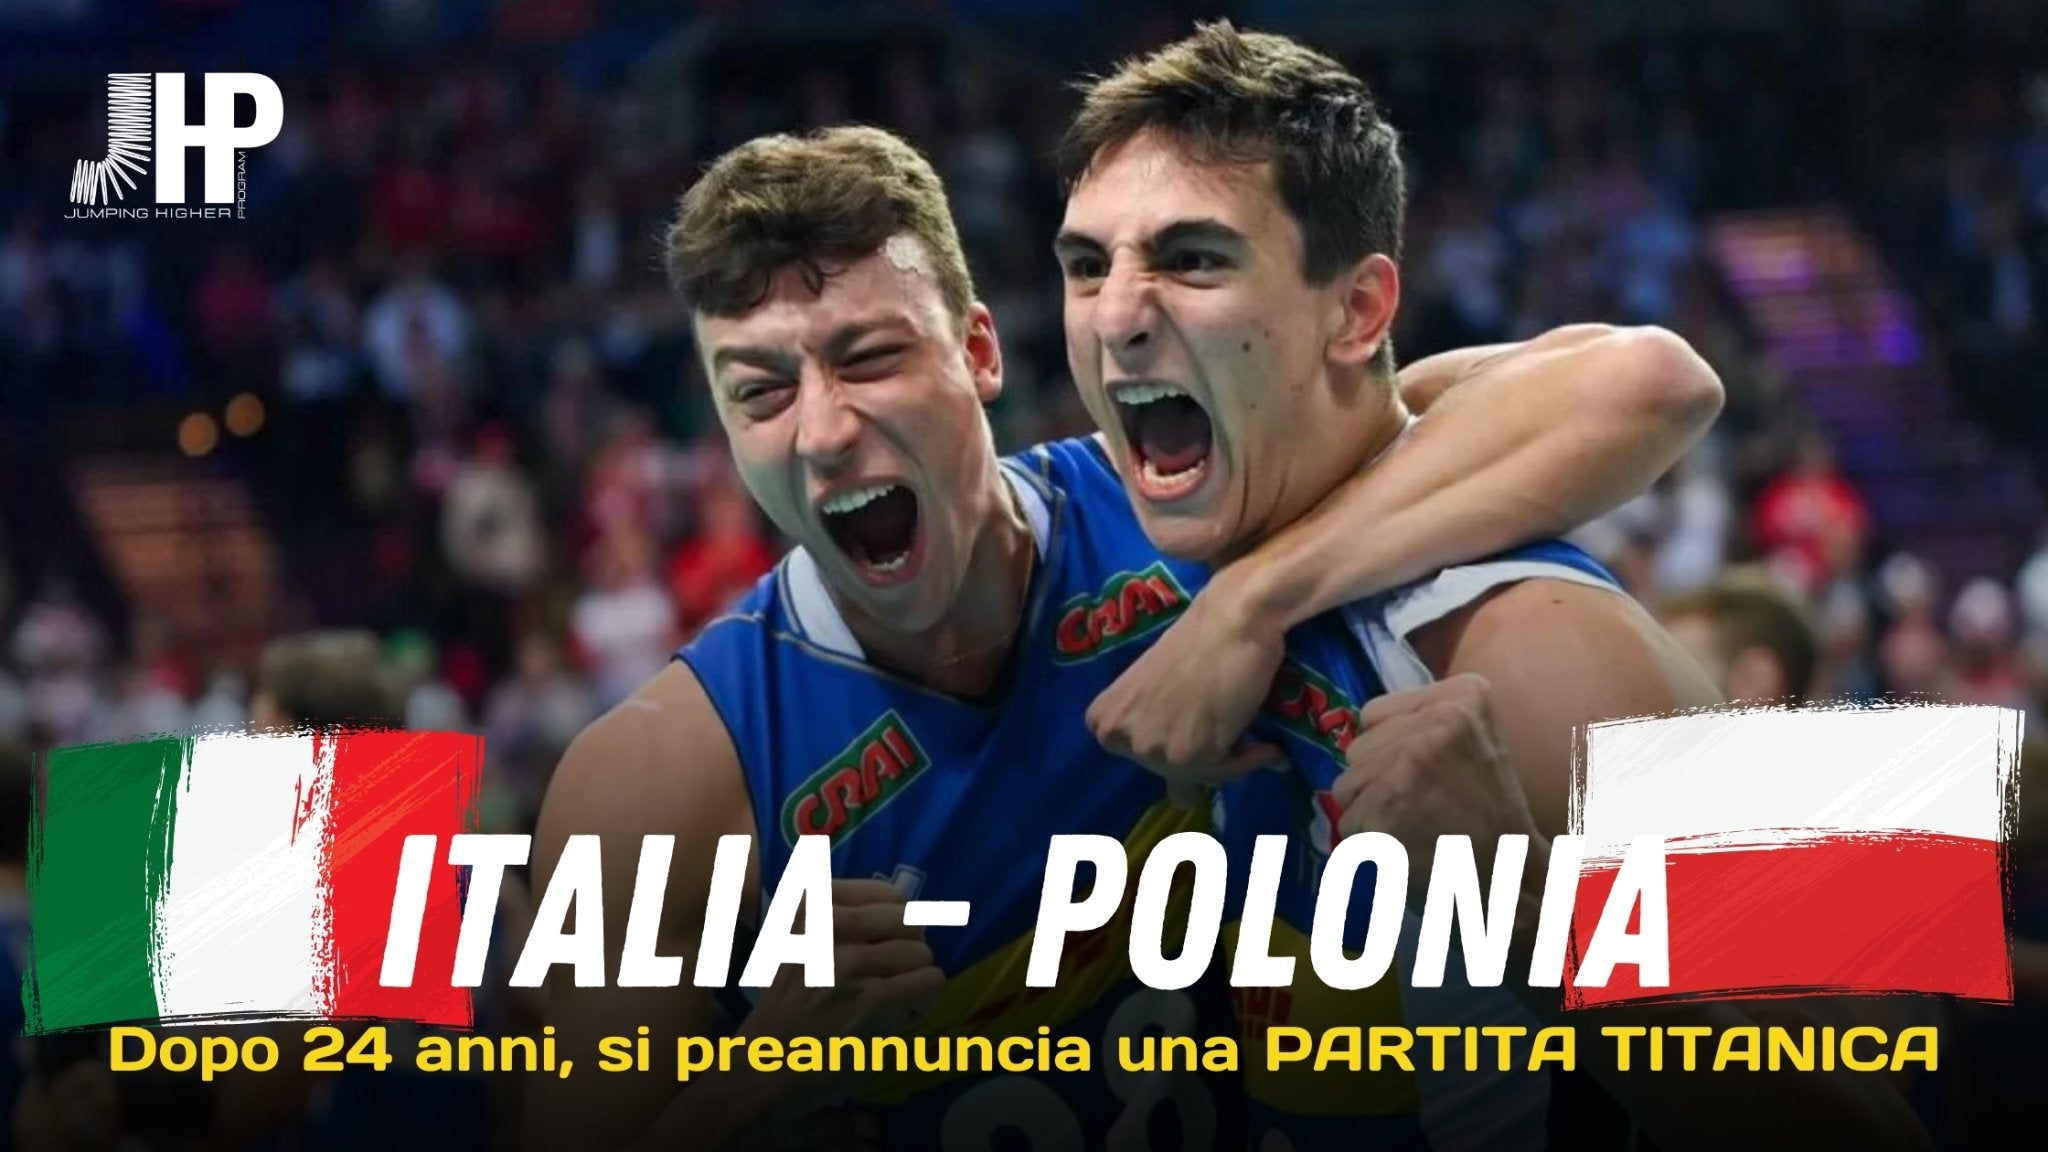 Mondiali di Pallavolo 2022: dopo 24 anni l'Italia torna in finale contro la Polonia - JHP® Jump Higher Program